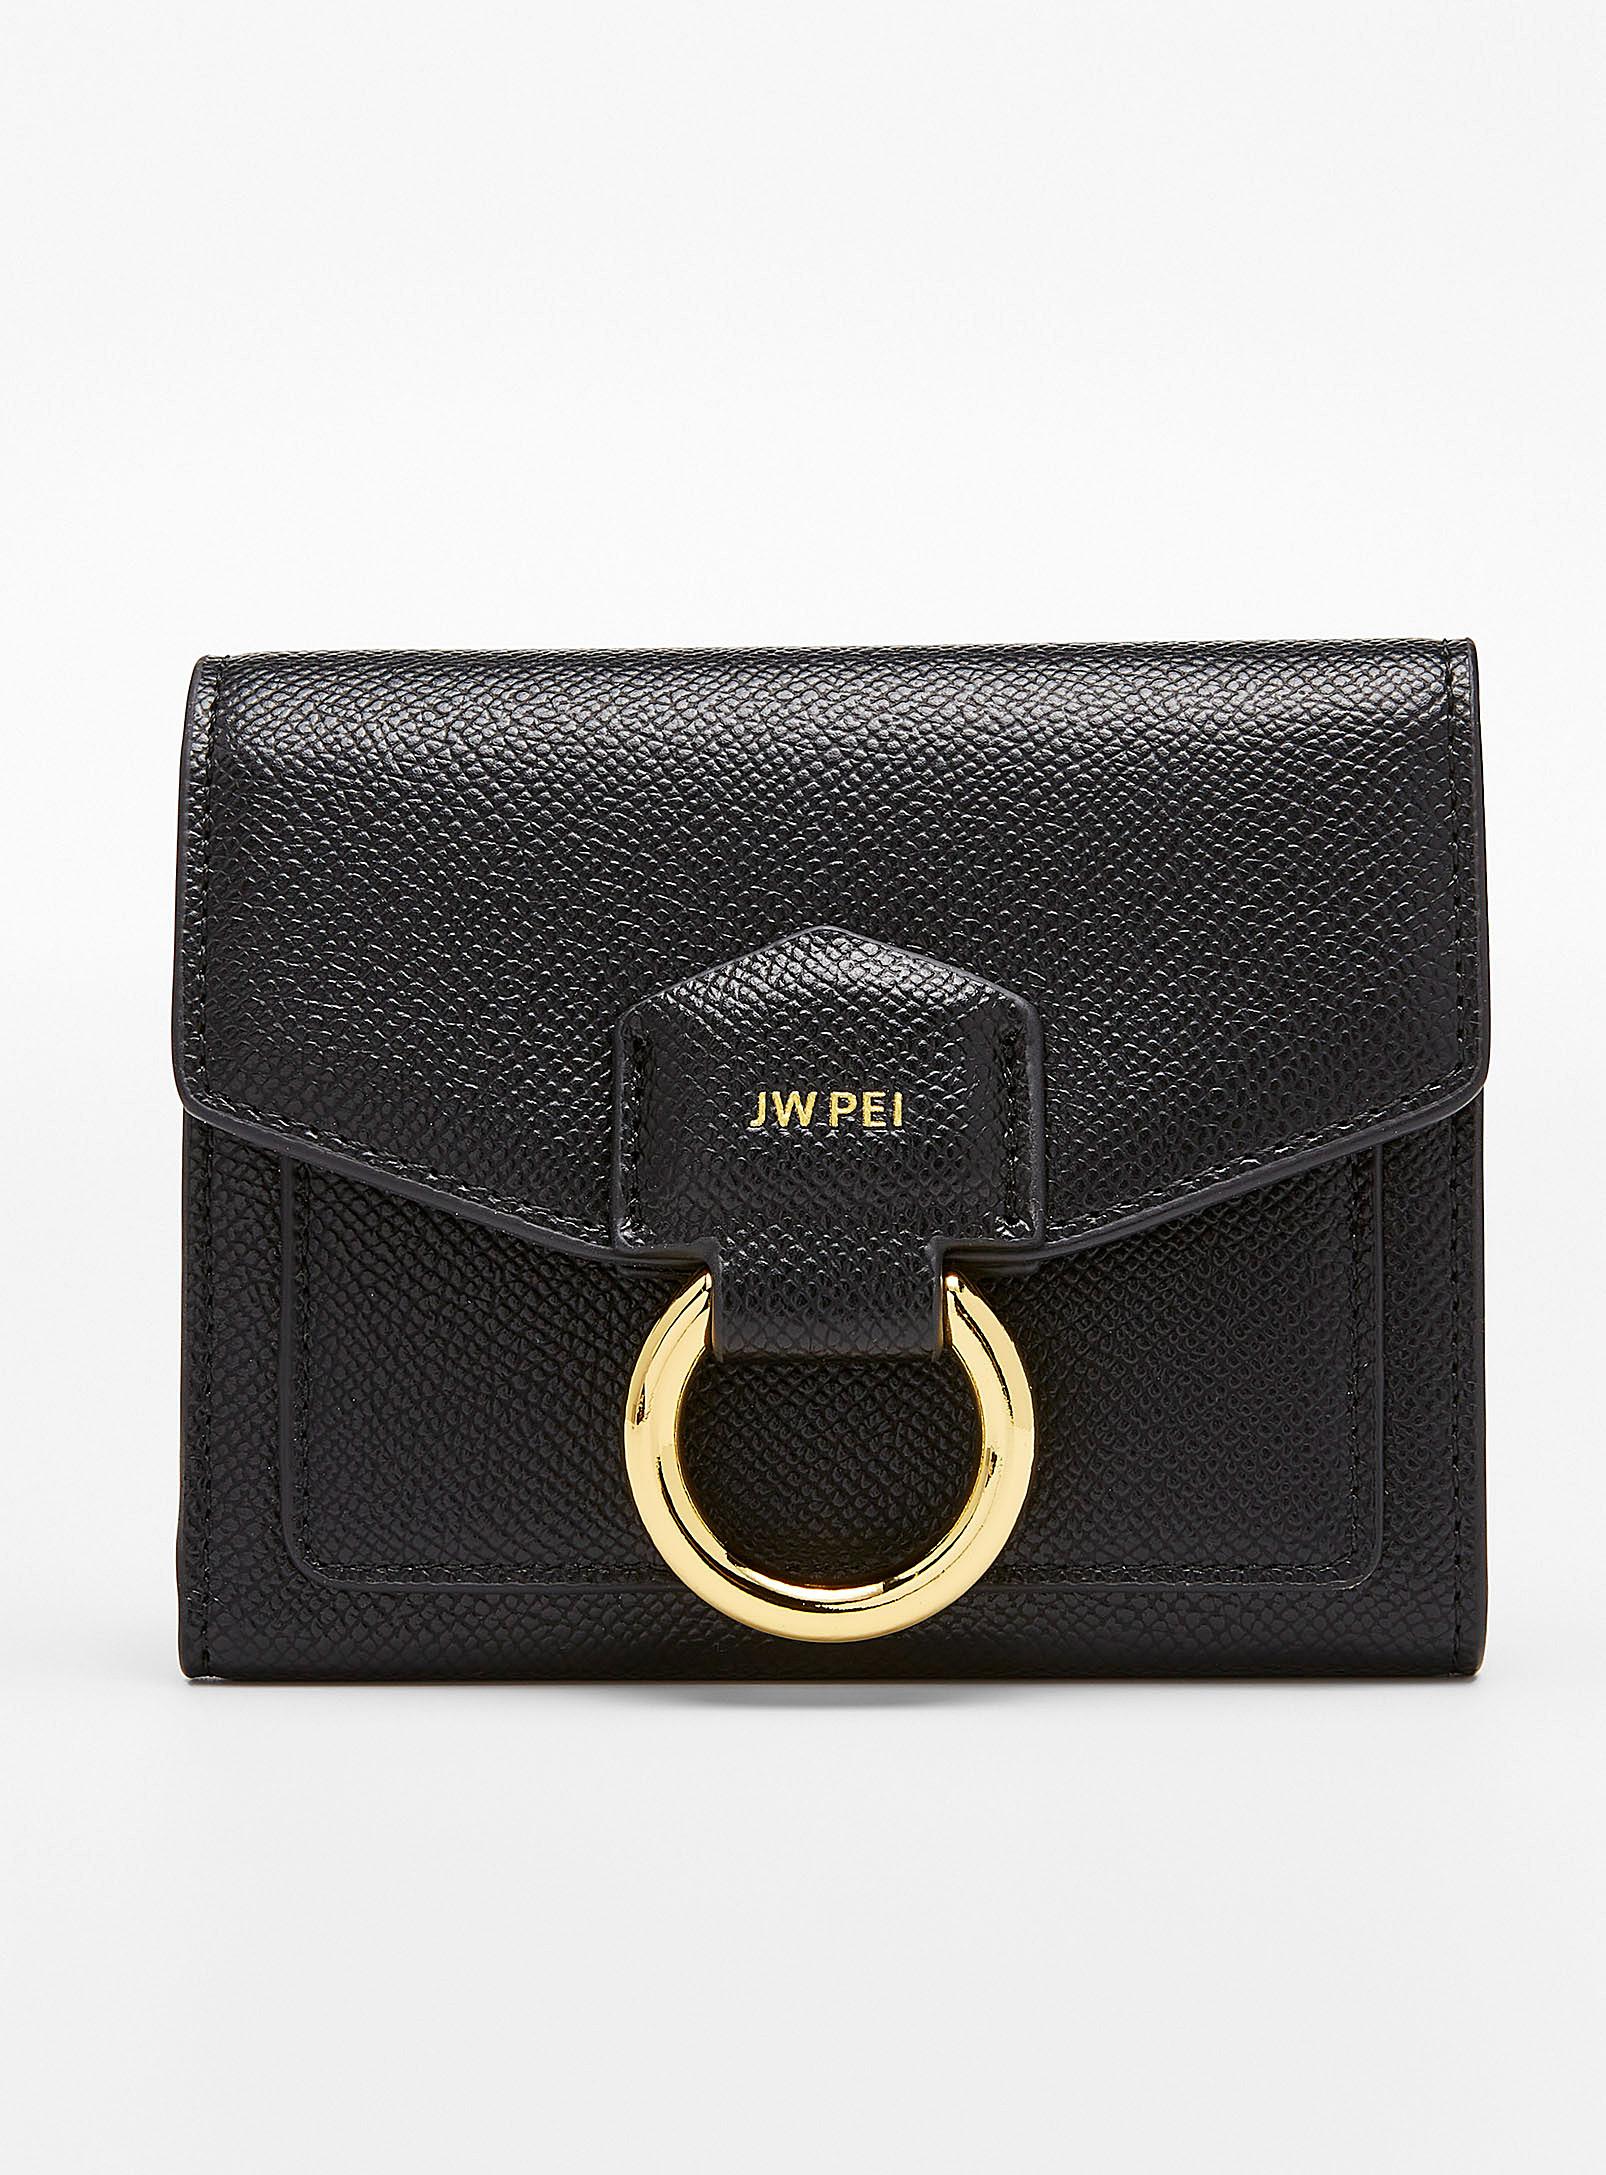 JW PEI Stella Grained Flap Wallet in Black | Lyst